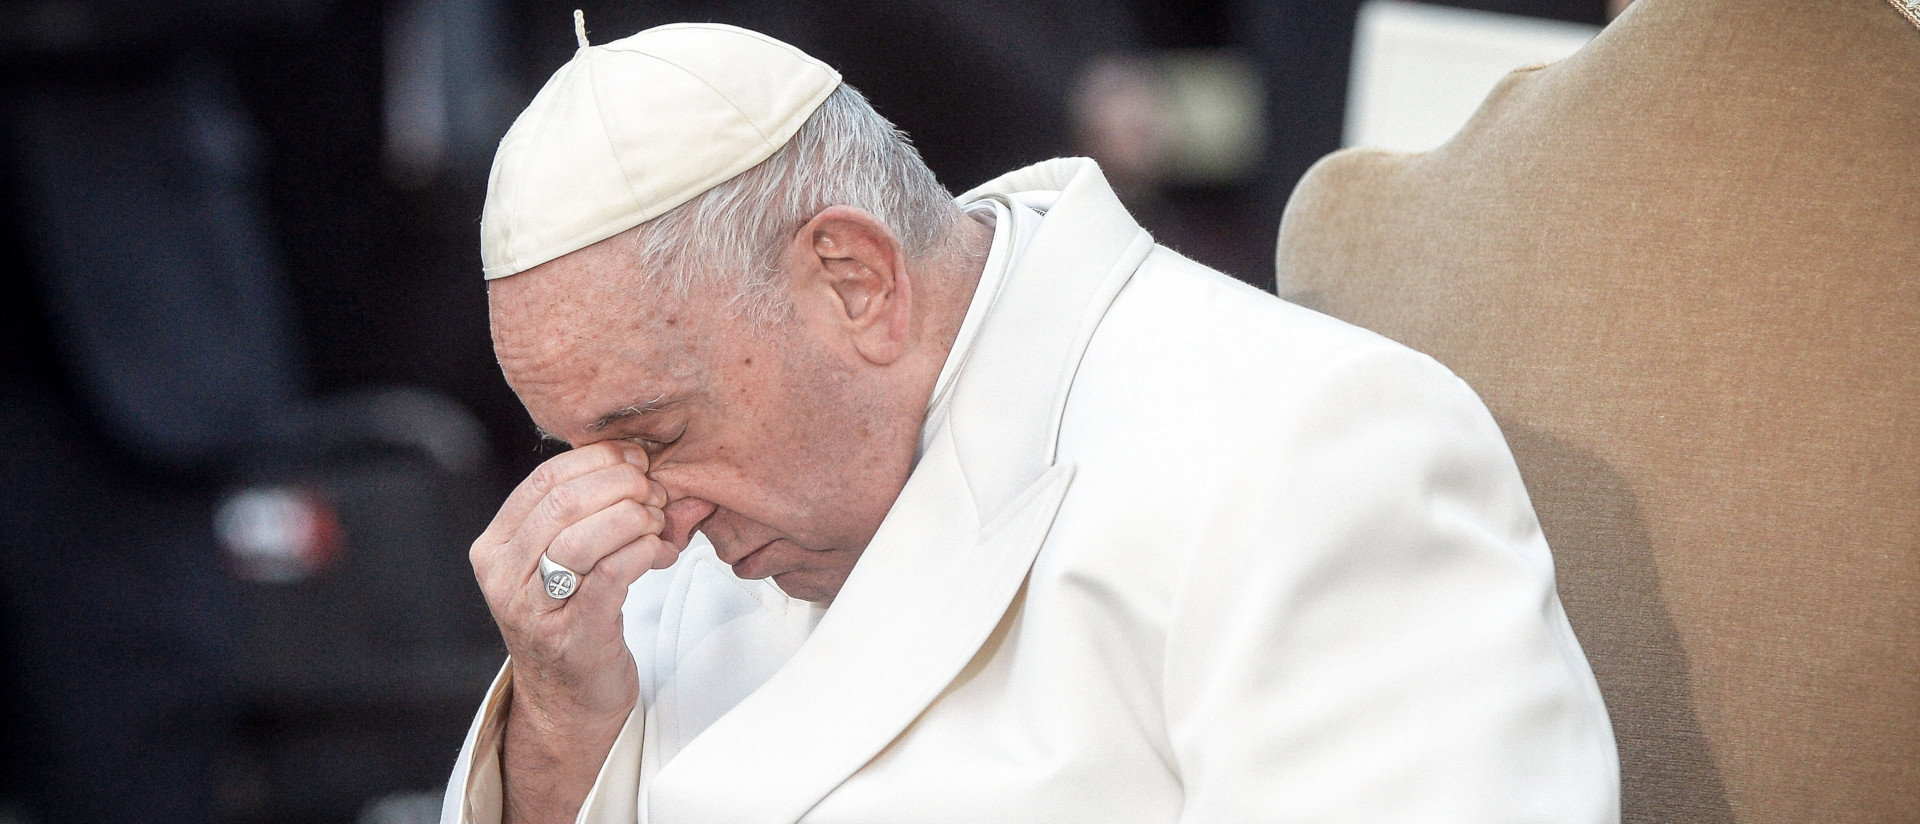 Papst Franziskus hat die Augen geschlossen und den Kopf gesenkt bei einem Gebet in Rom.